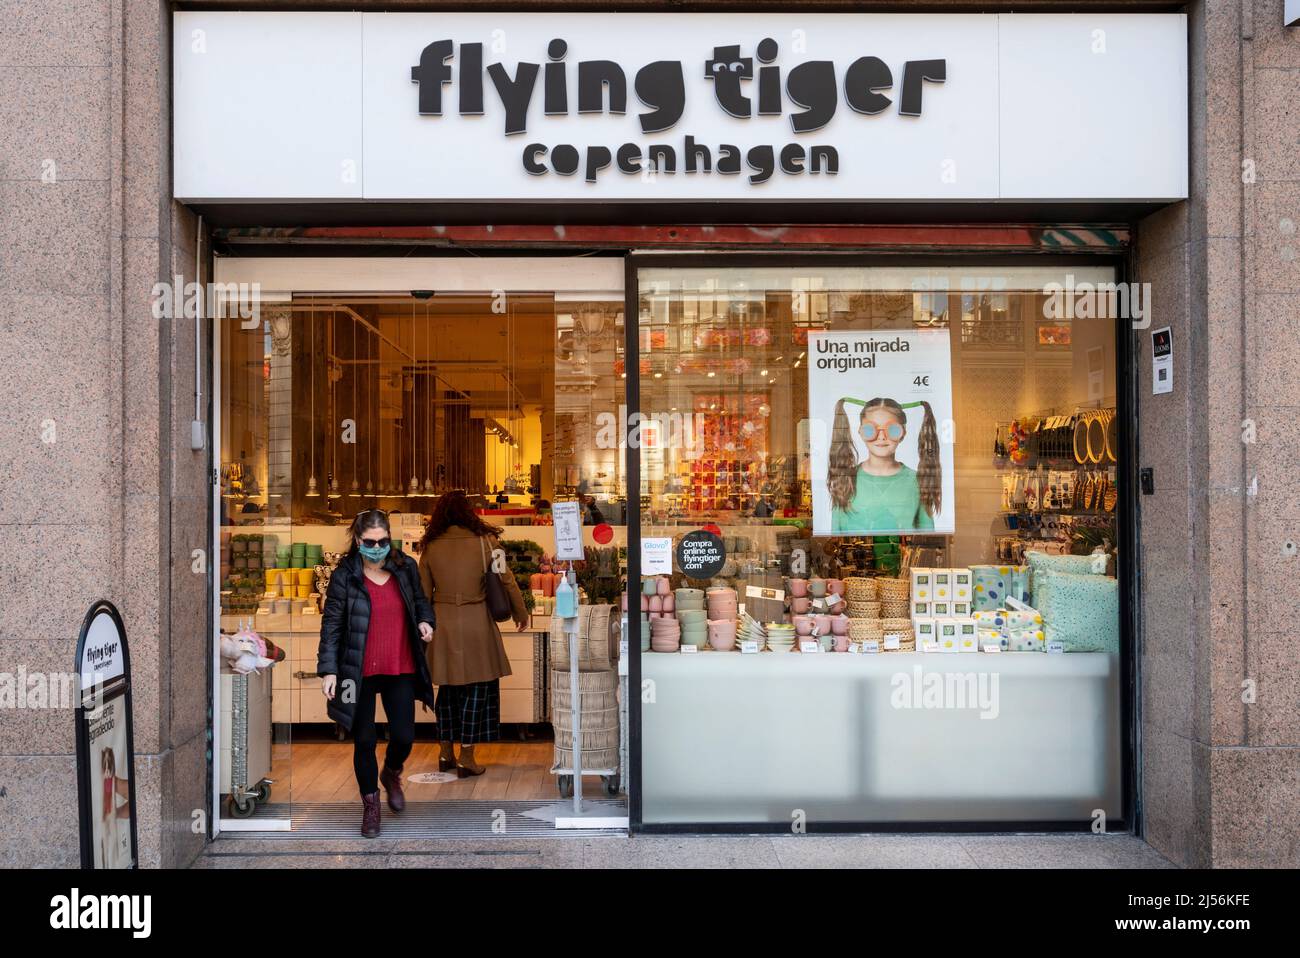 Flying tiger copenhagen store in immagini e fotografie stock ad alta  risoluzione - Alamy